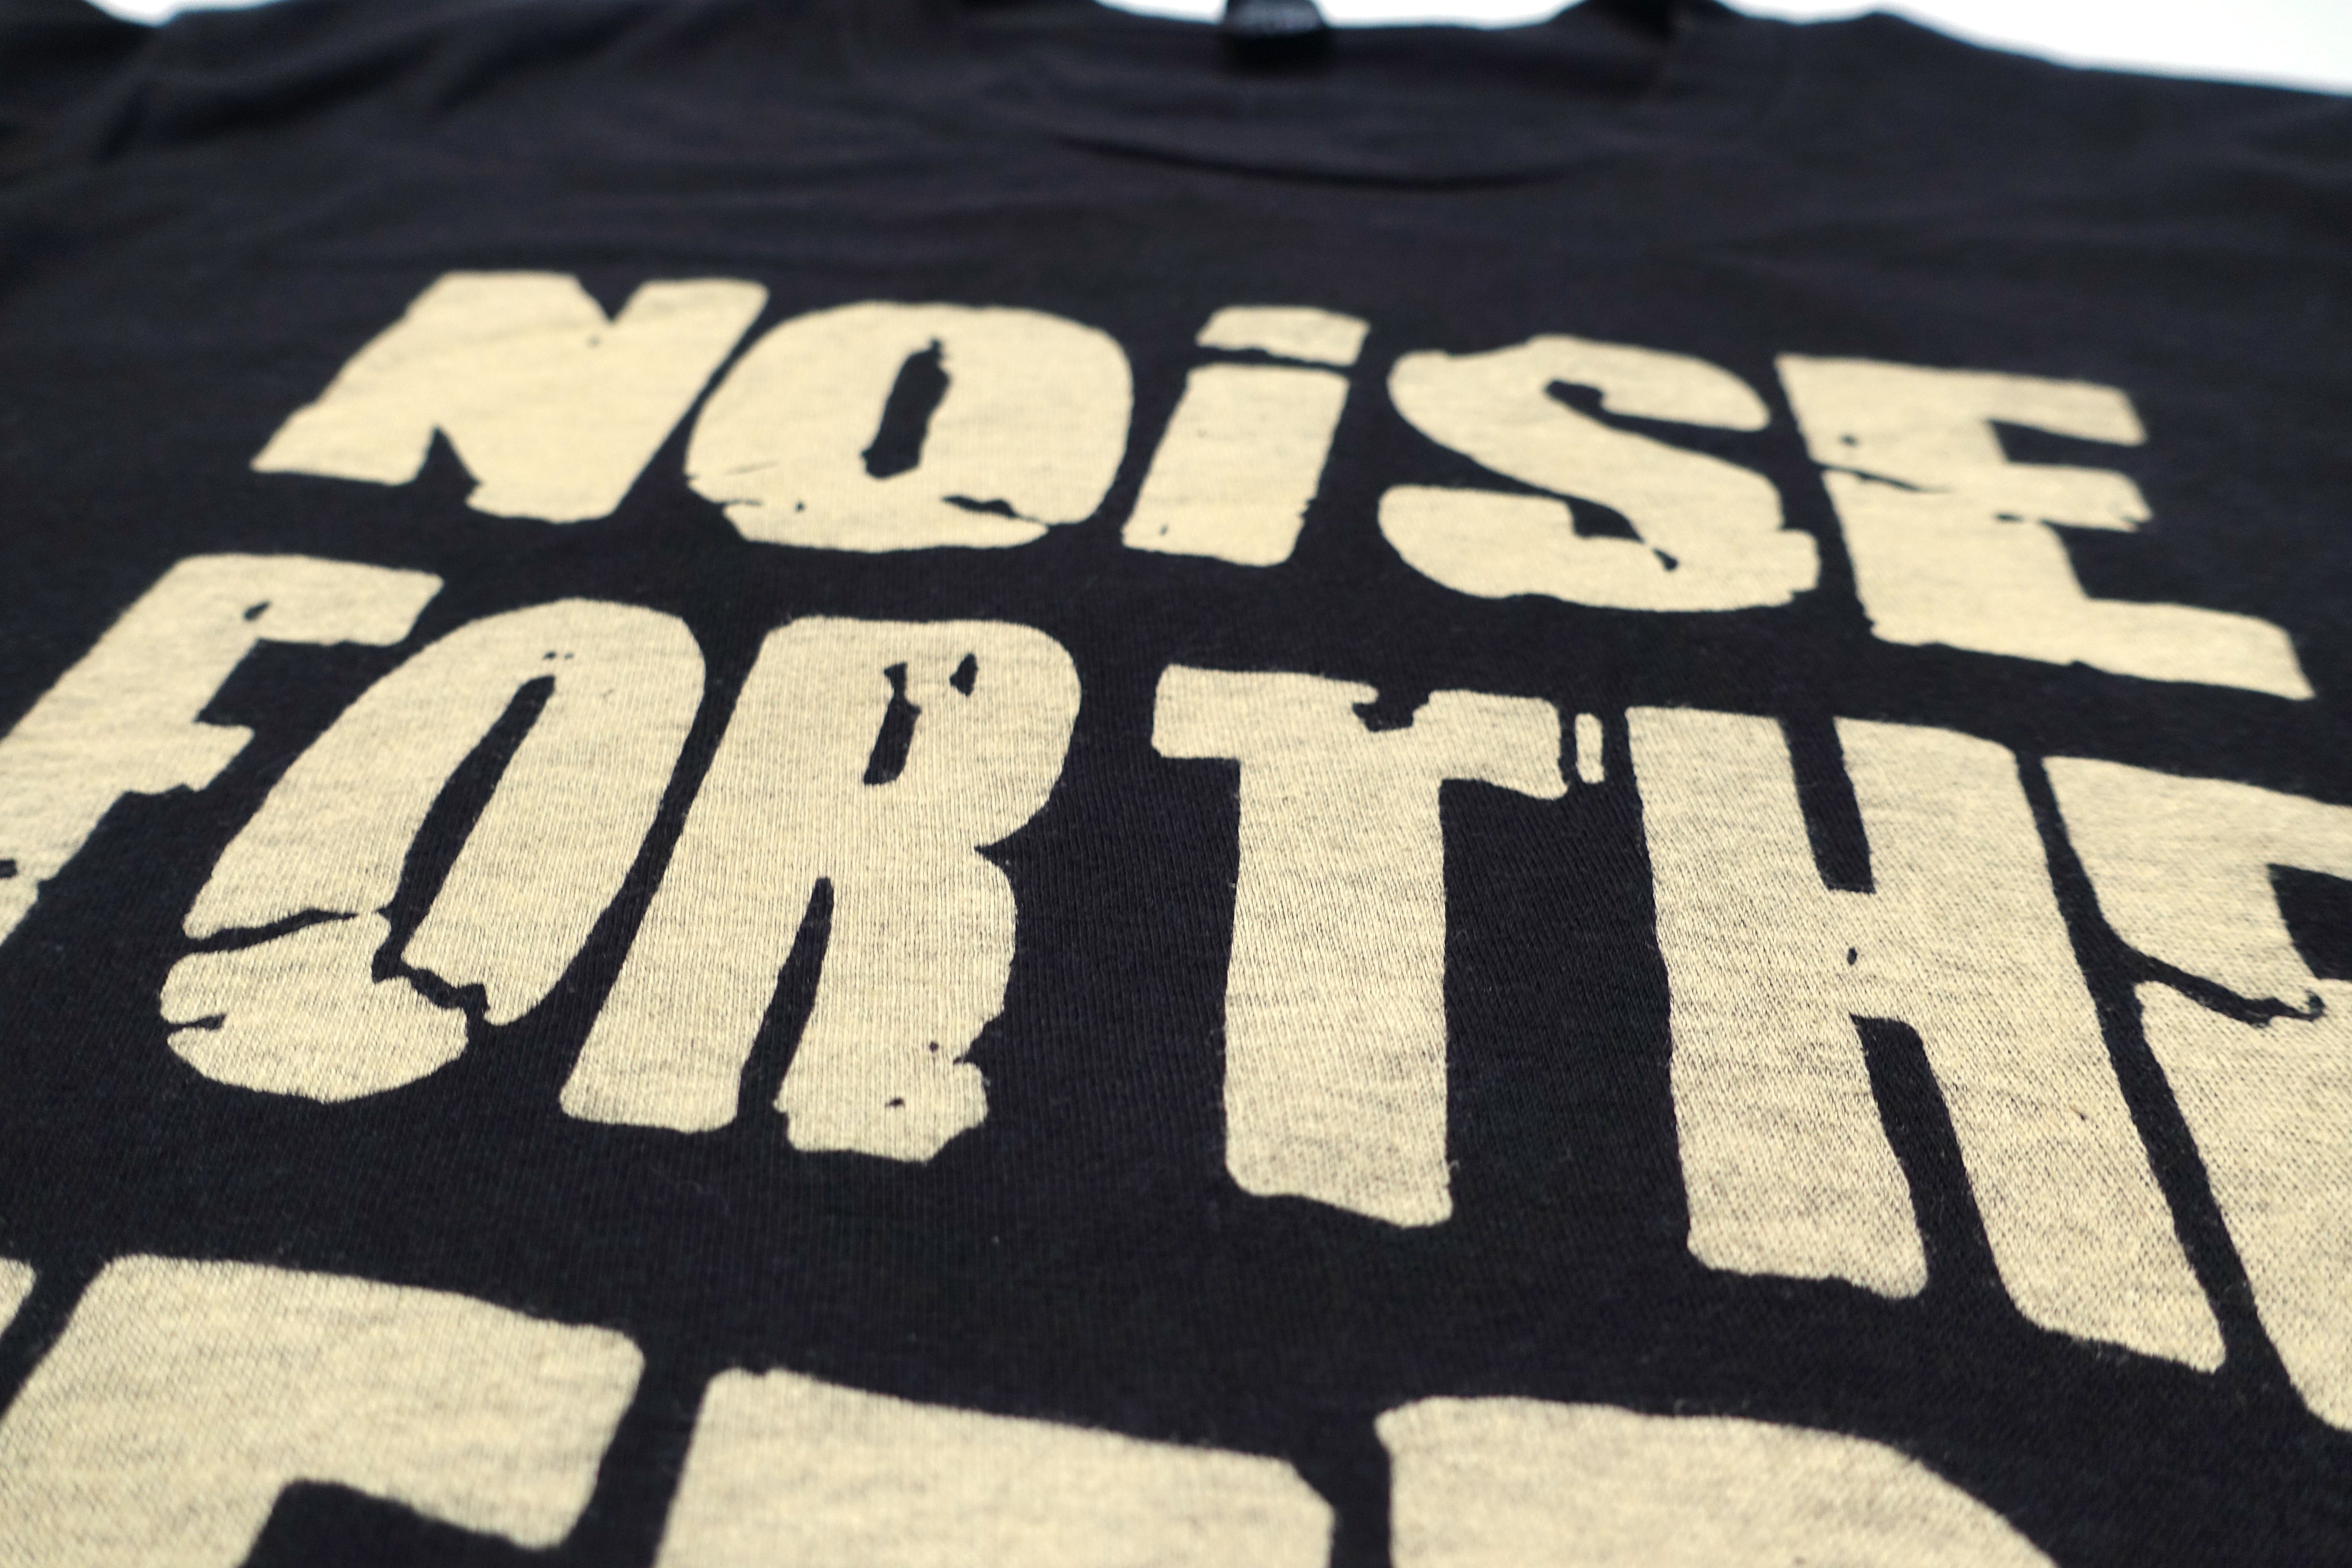 Noise For the Needy  ‎– Noise For the Needy Note 2015 Tour Shirt Size Large